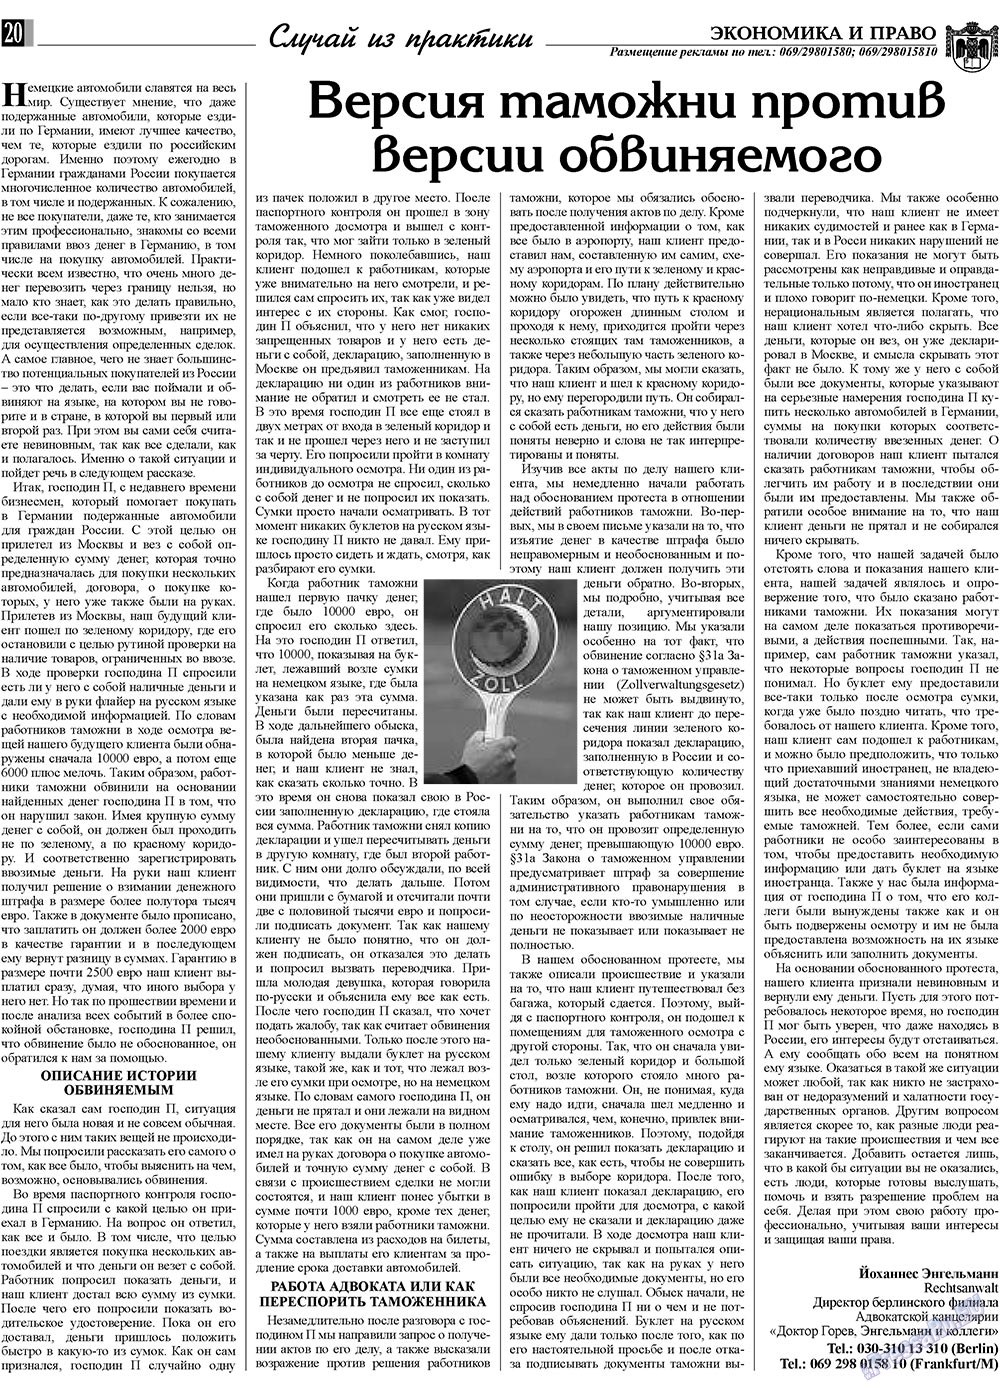 Экономика и право, газета. 2009 №5 стр.20